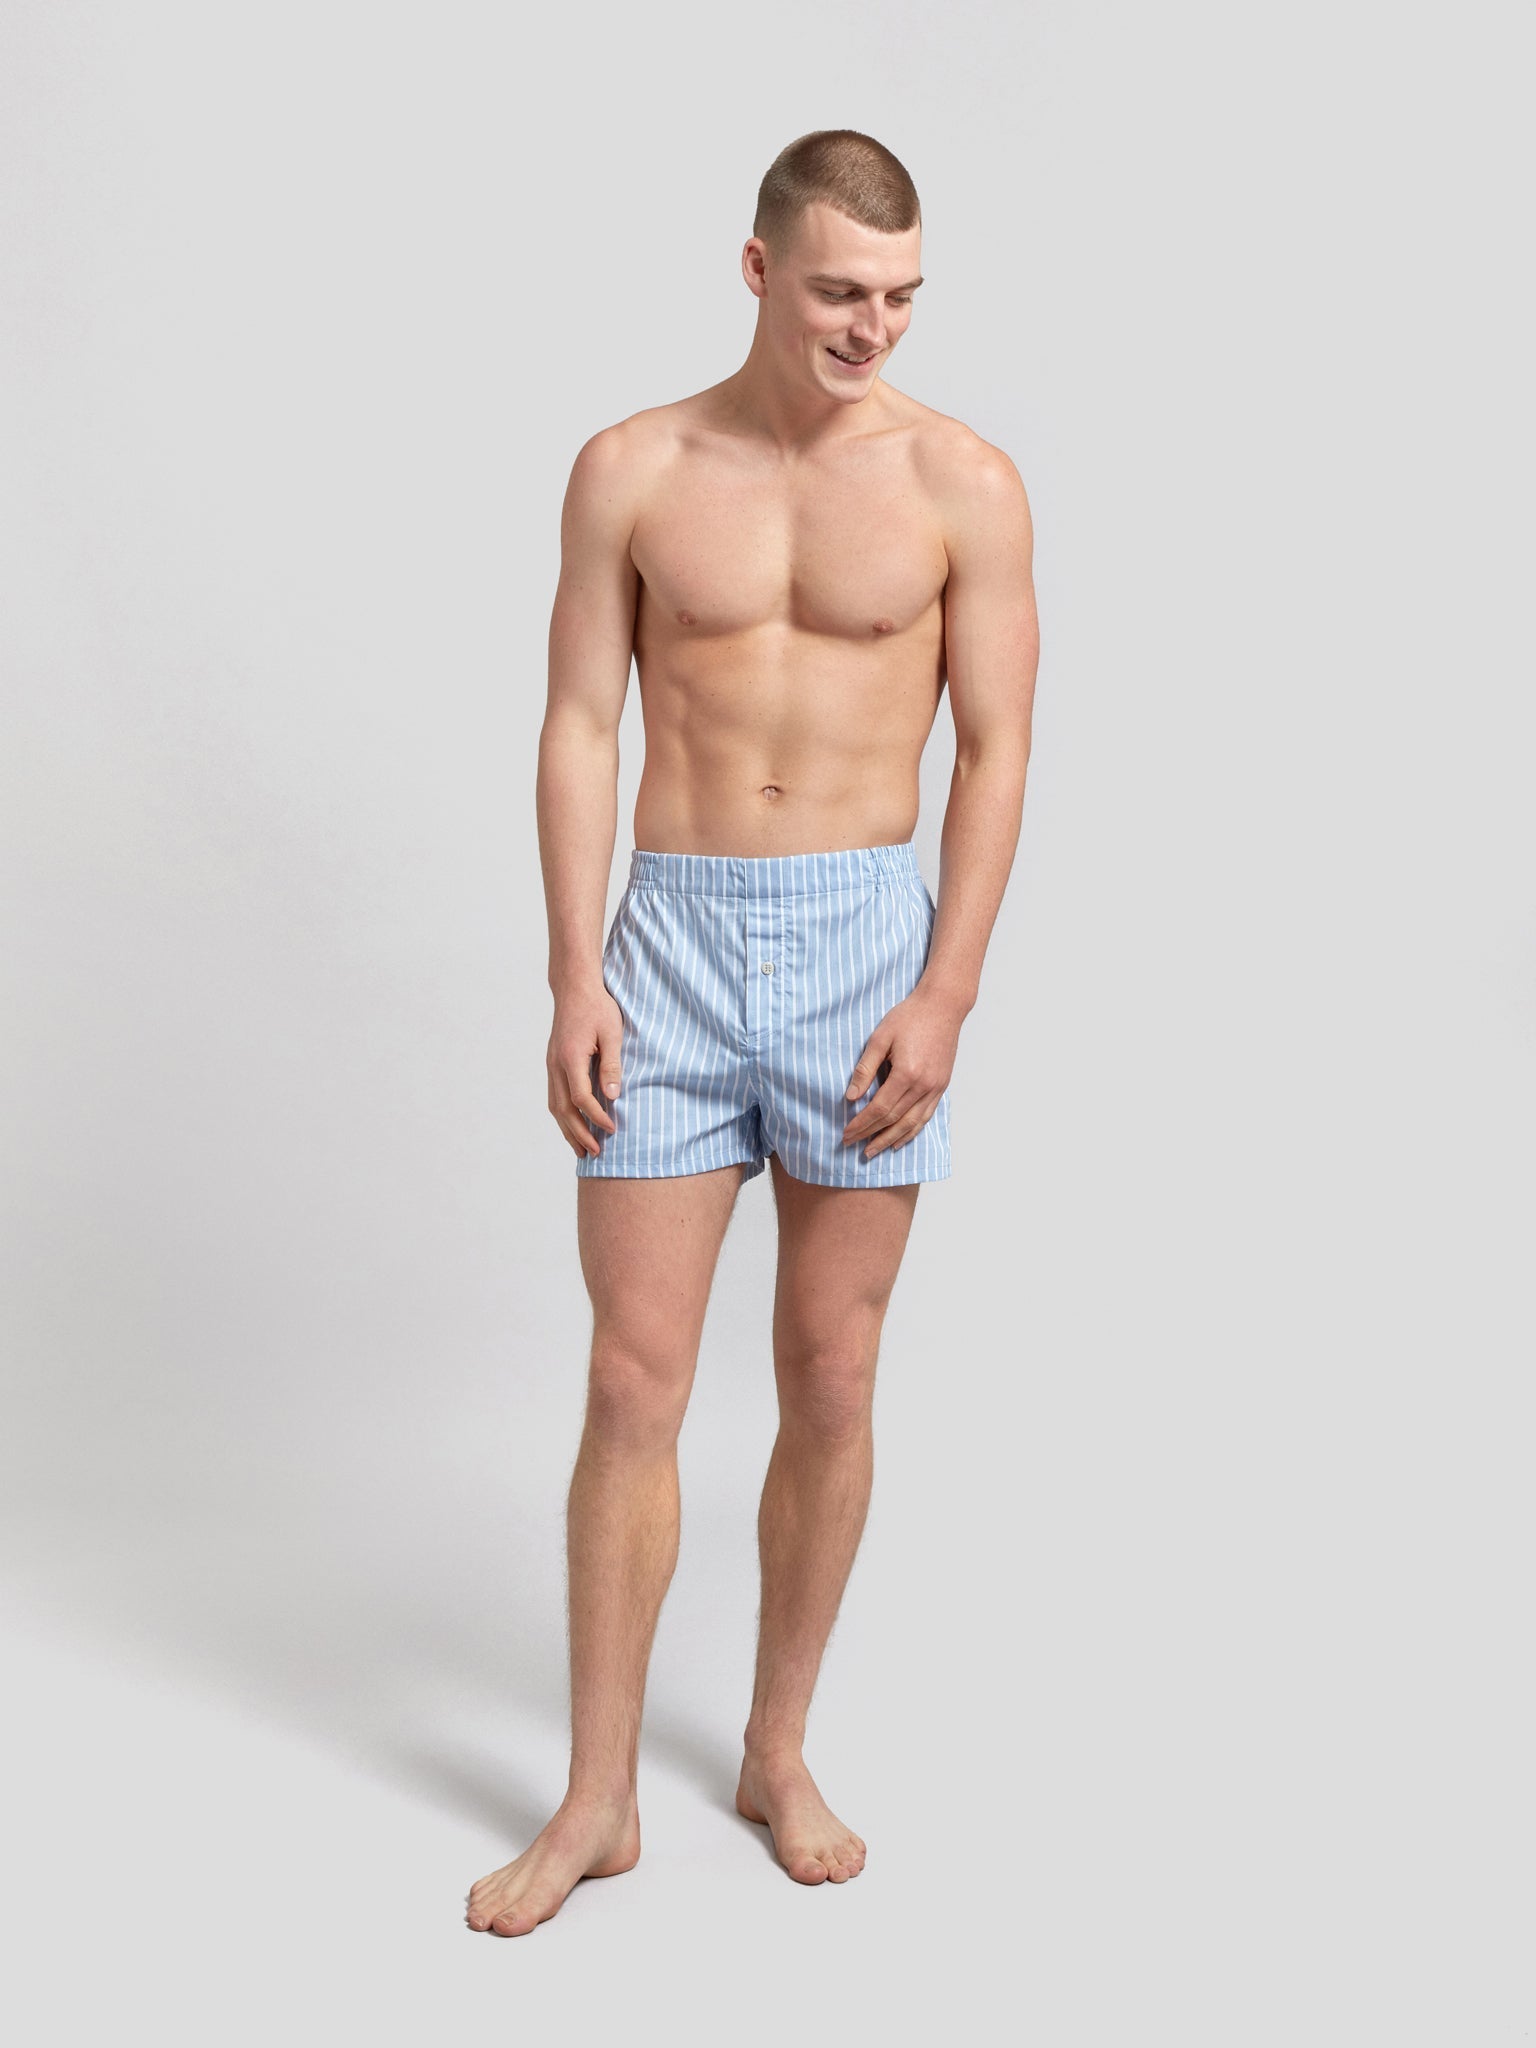 Striped jersey-knit boxers, Men's underwear